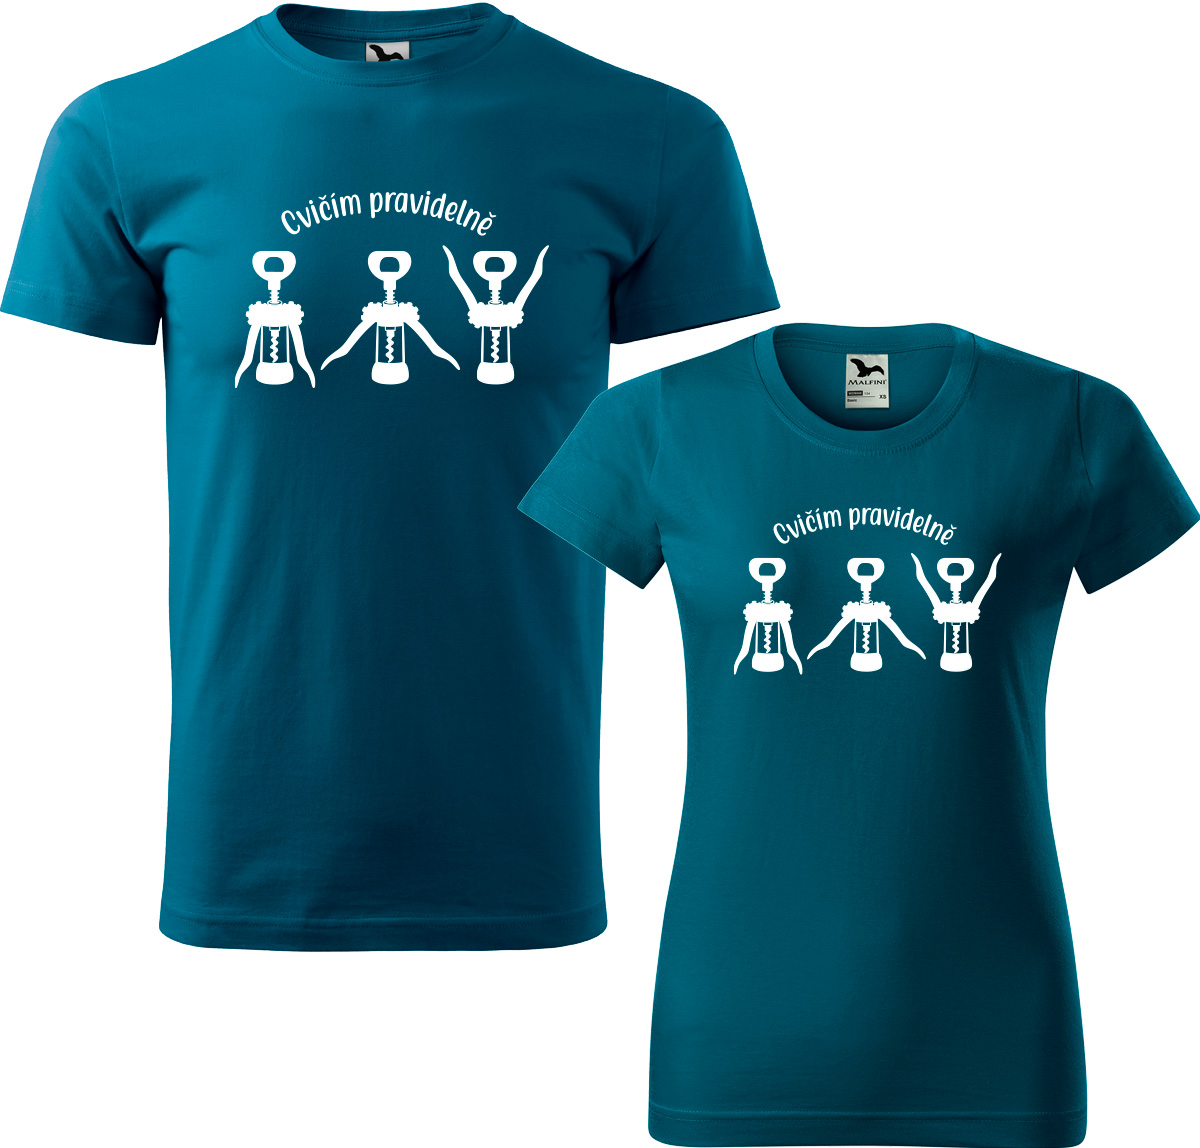 Trička pro páry - Cvičím pravidelně Barva: Petrolejová (93), Velikost dámské tričko: XL, Velikost pánské tričko: XL